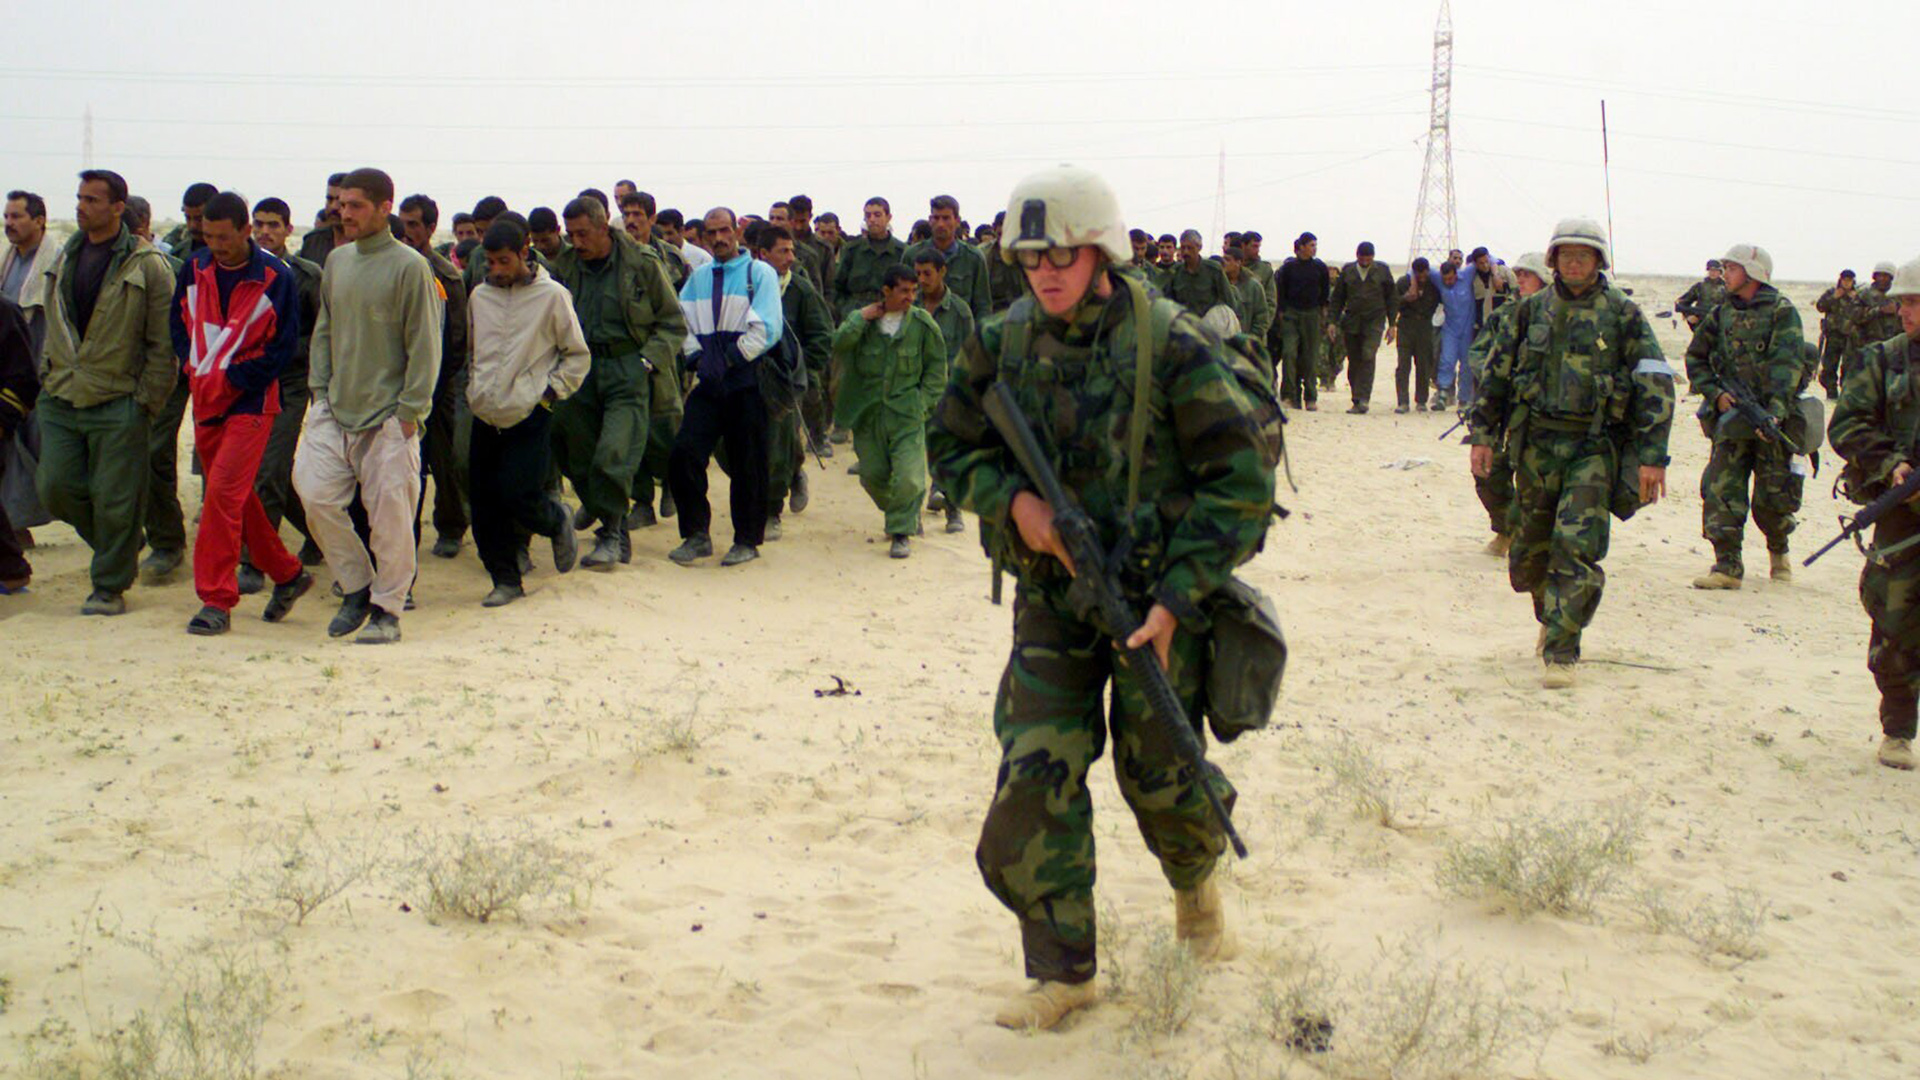 US-Marines eskortieren während der Operation Iraqi Freedom gefangene Kriegsgefangene in ein Lager in der irakischen Wüste (Archivfoto vom 21.03.2003). | picture-alliance / dpa